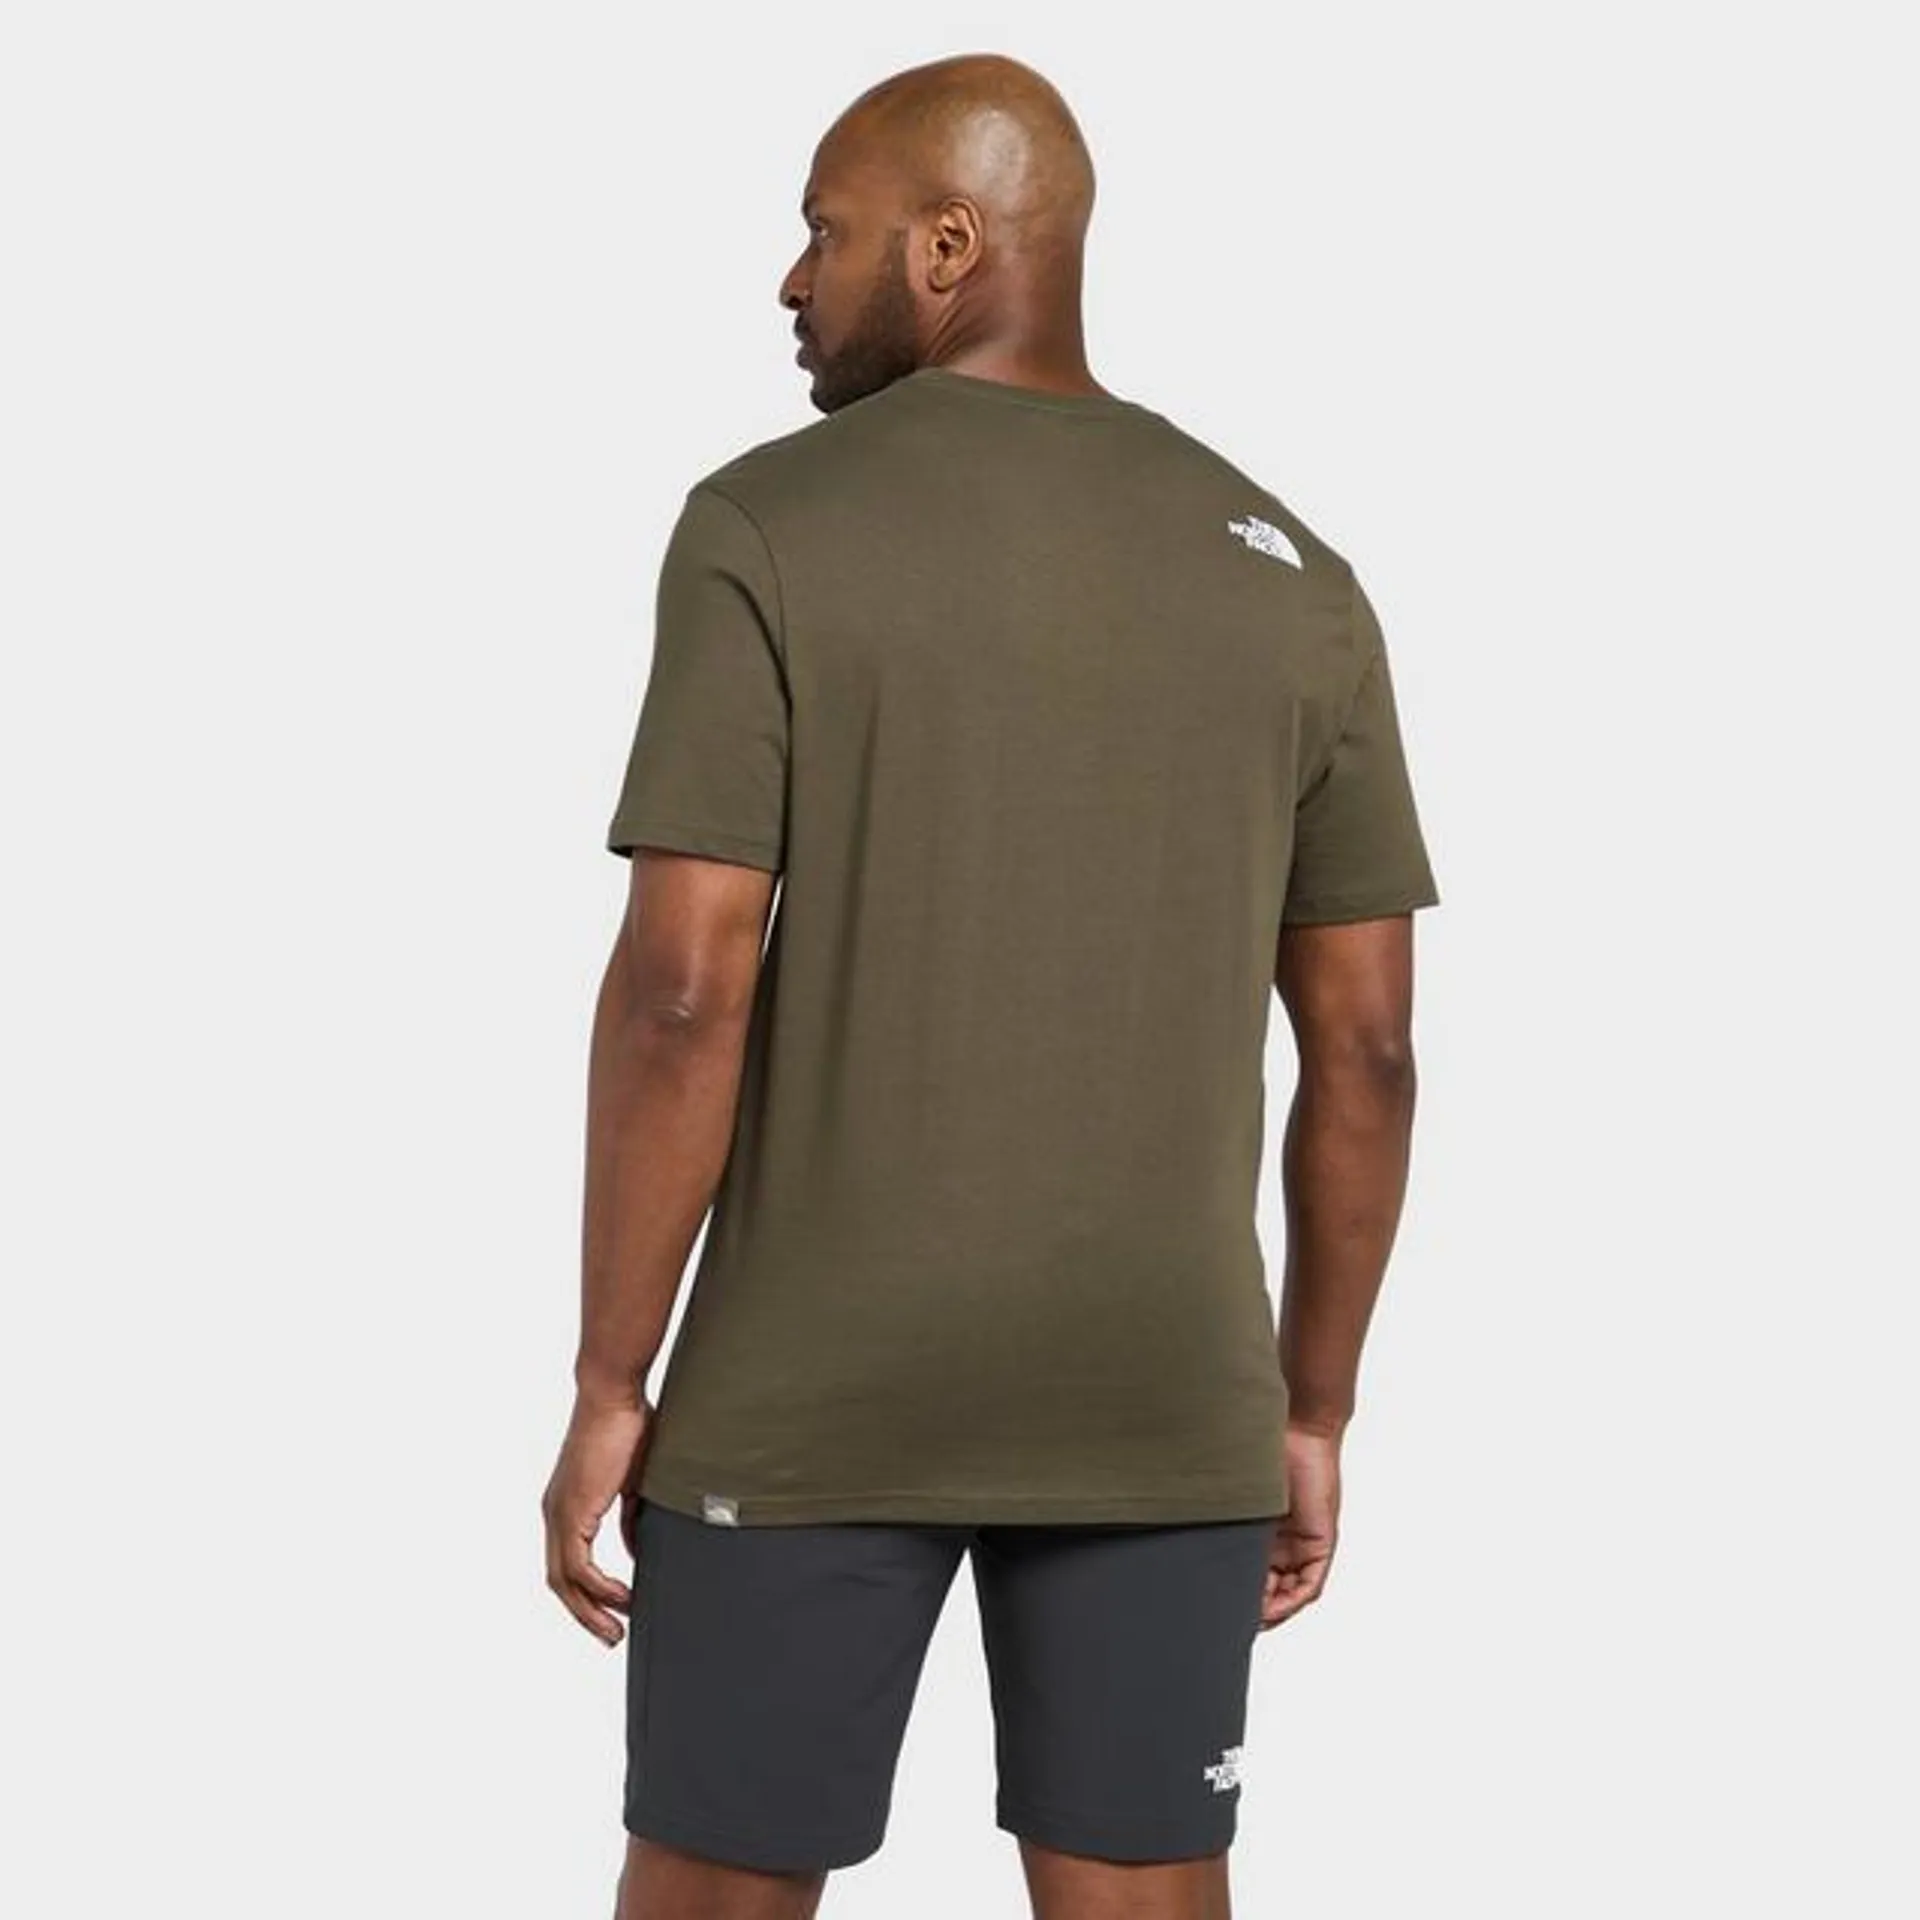 Men's Easy Short-Sleeve T-shirt